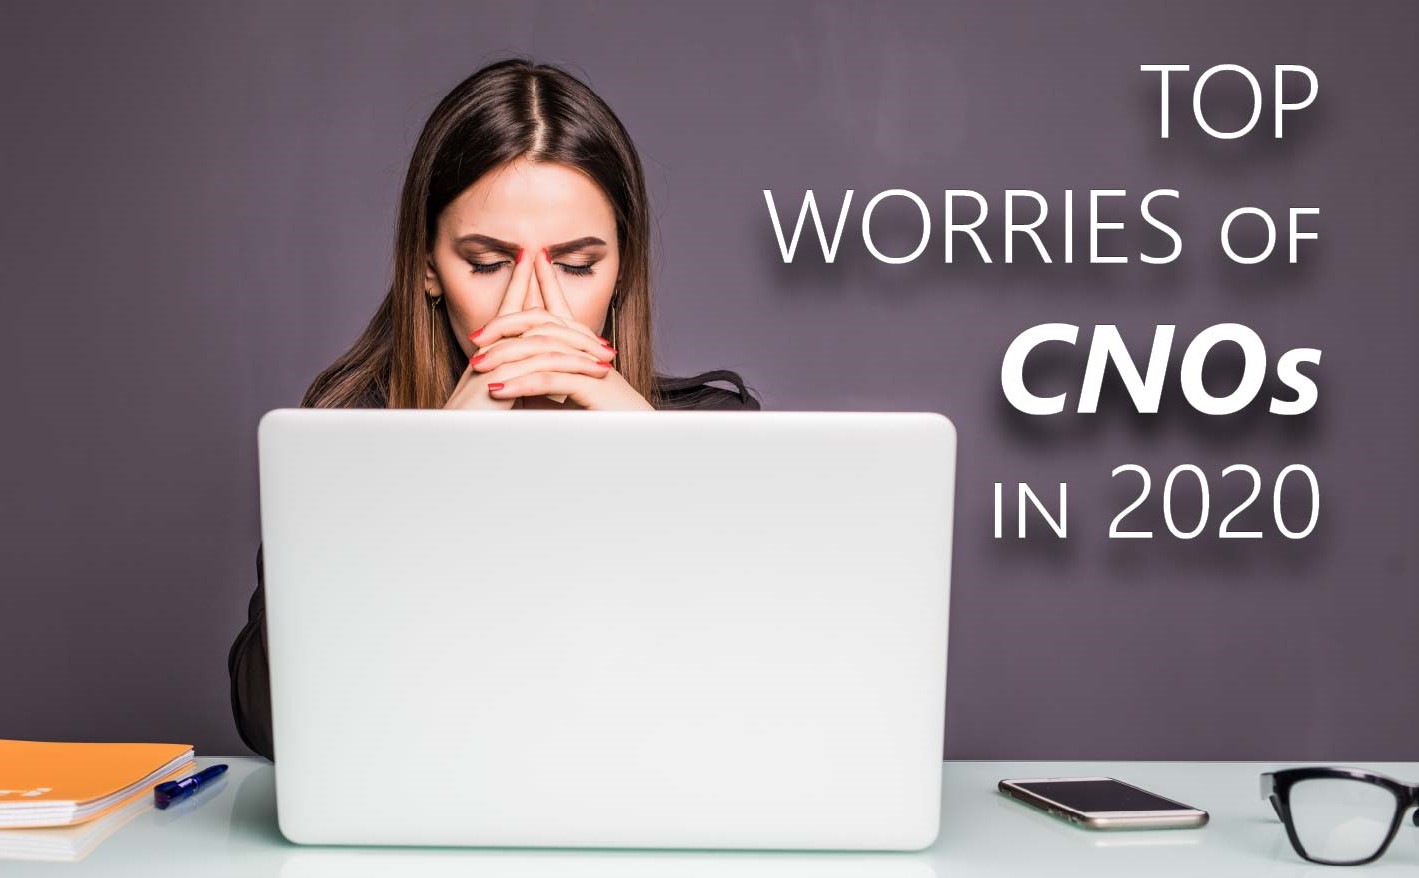 Top Worries of CNOs in 2020